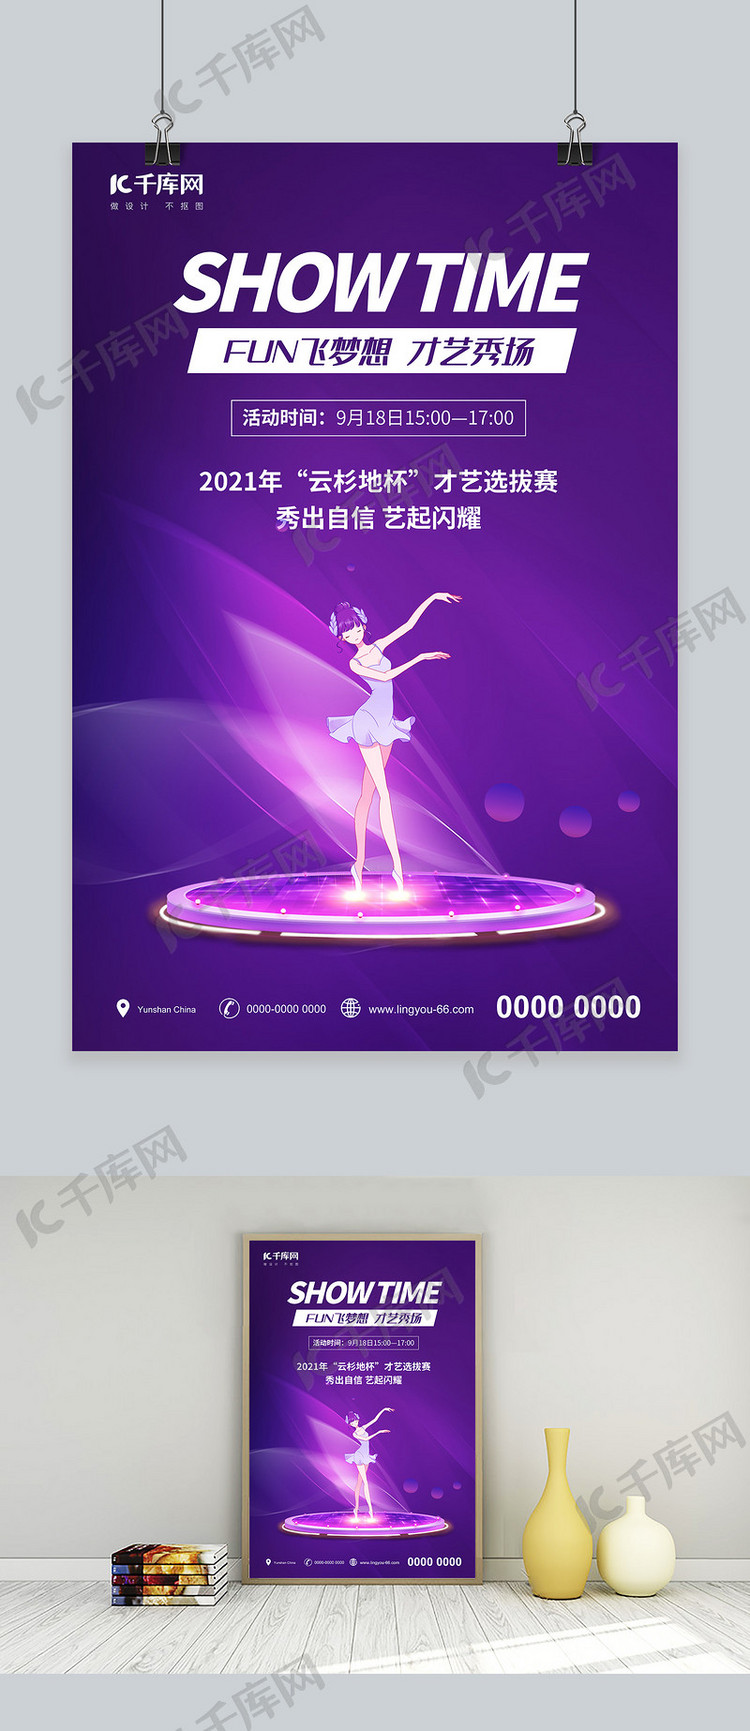 比赛舞蹈比赛紫色创意海报